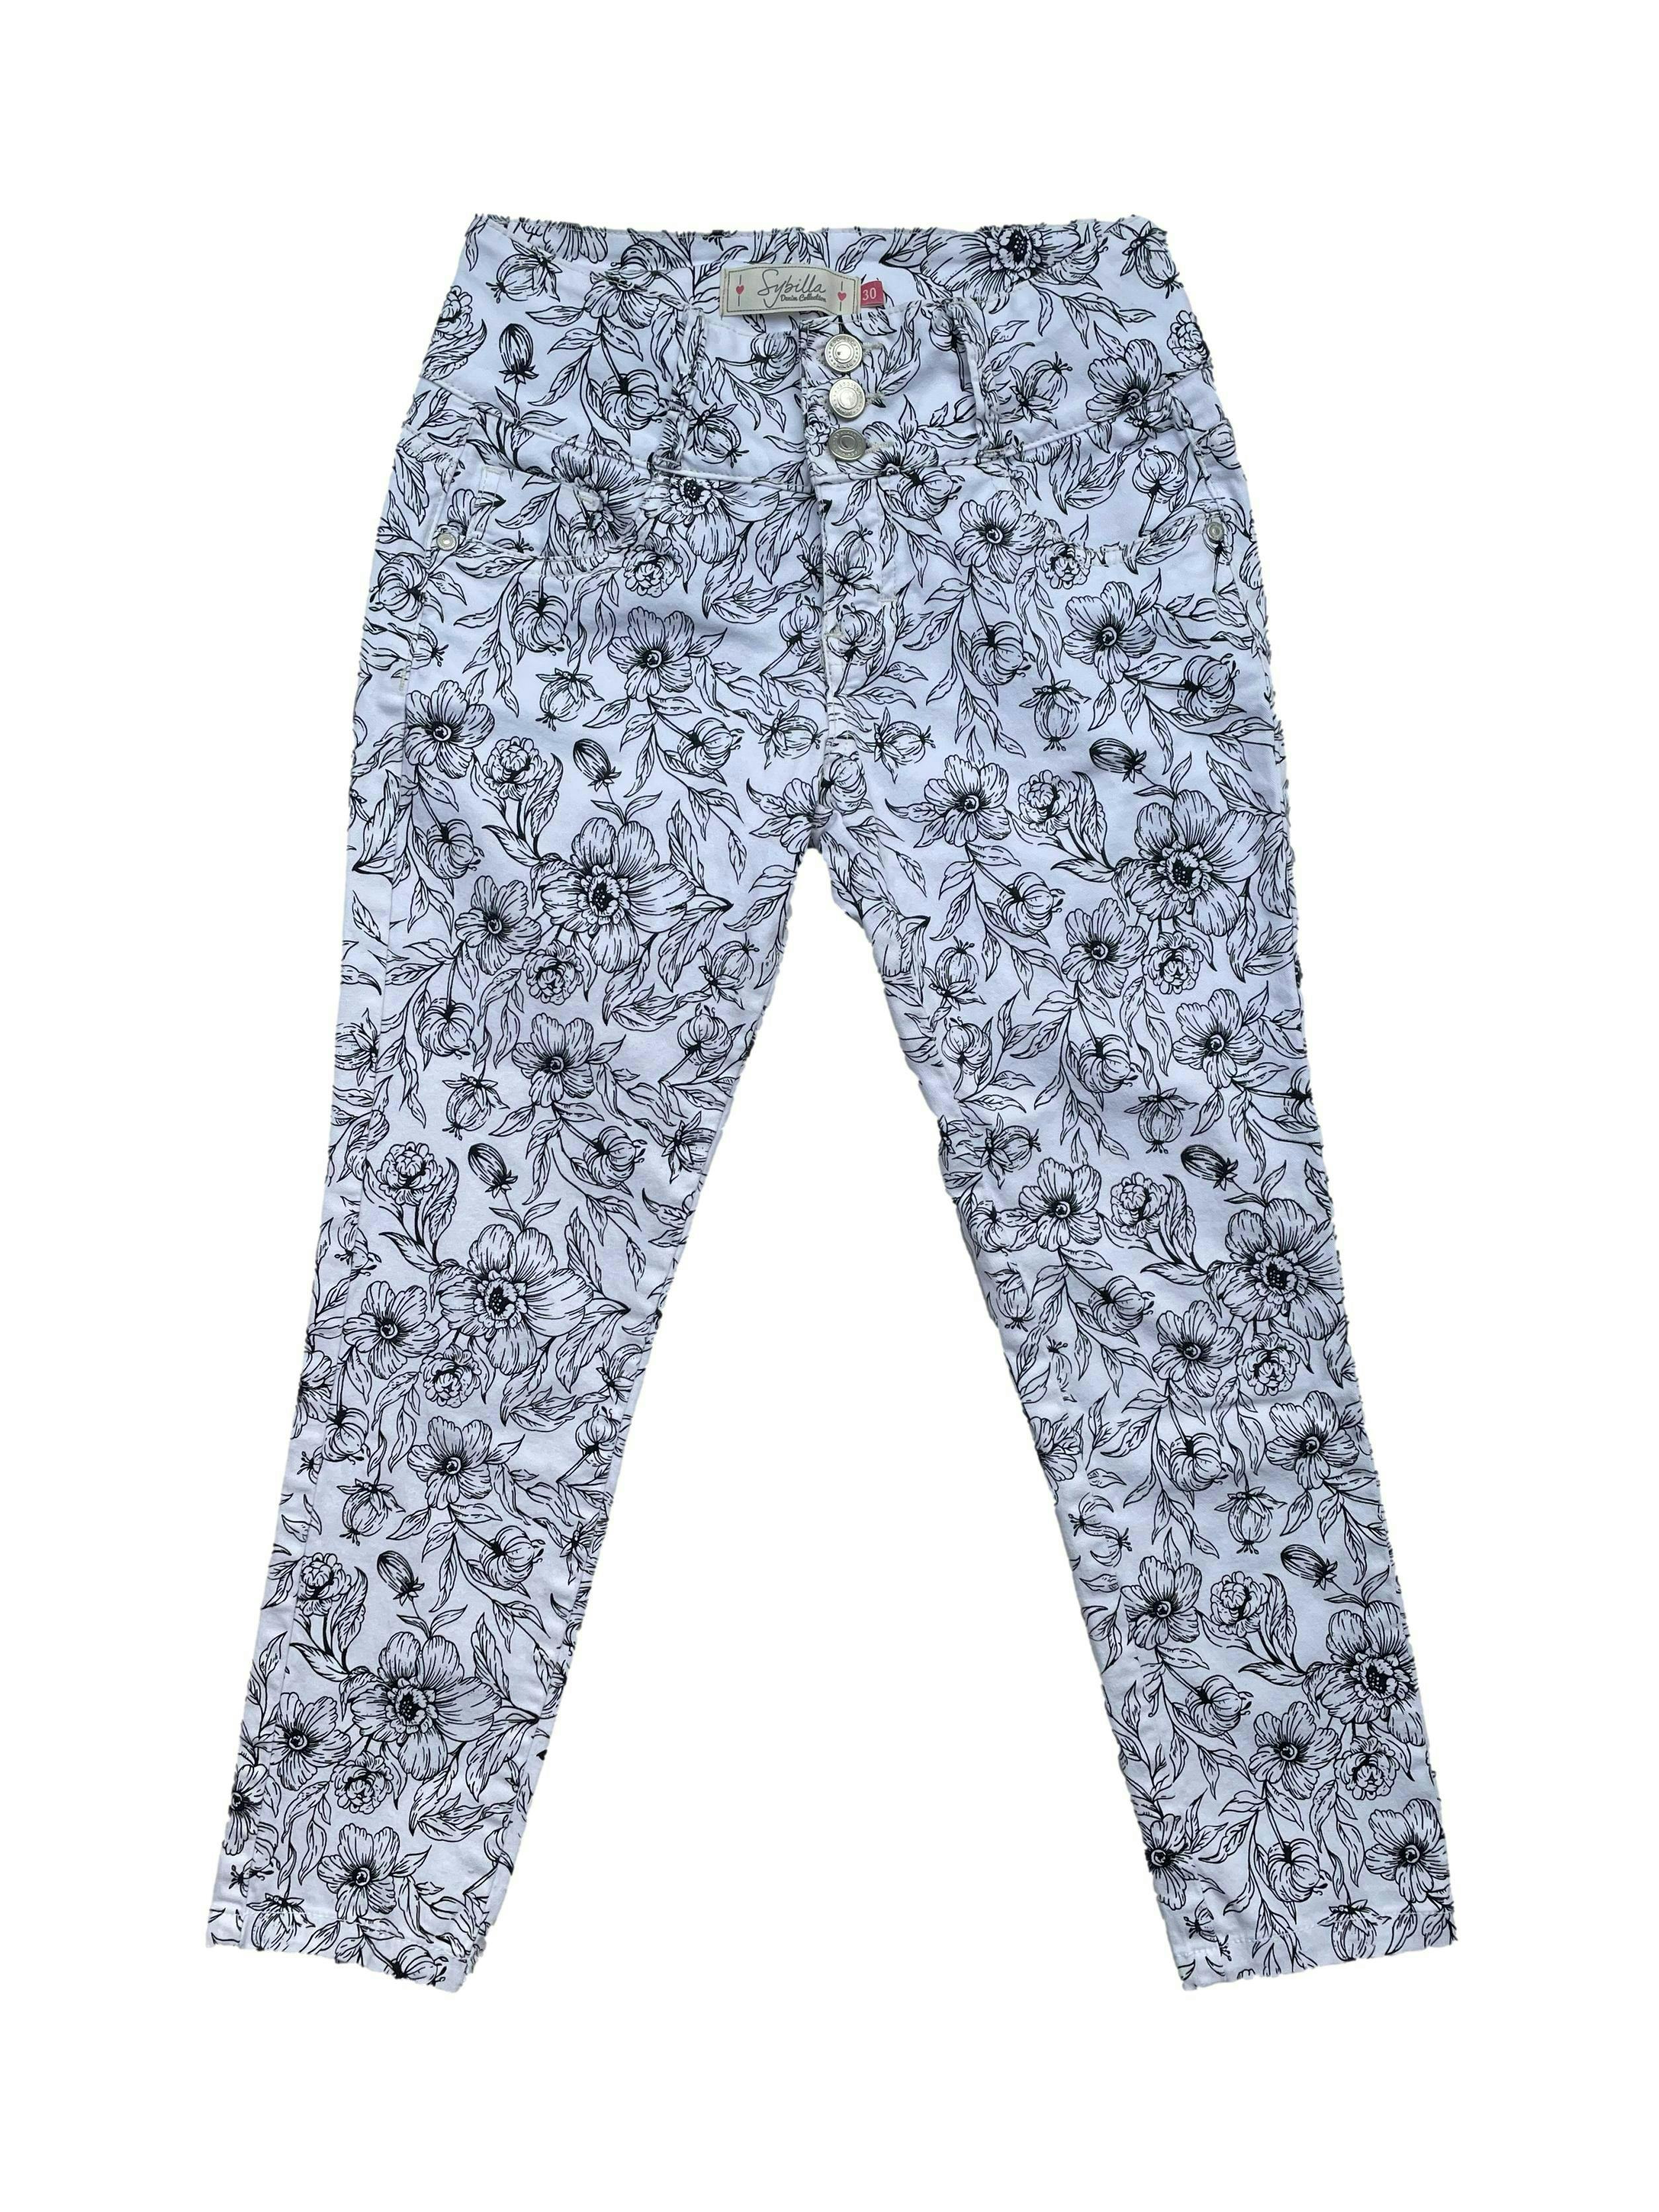 Pantalón Sybilla jean blanco con flores negras, pitillo al tobillo con tiro medio, bolsillos delantero y posteriores. Cintura 65cm sin estirar, Largo 78cm.